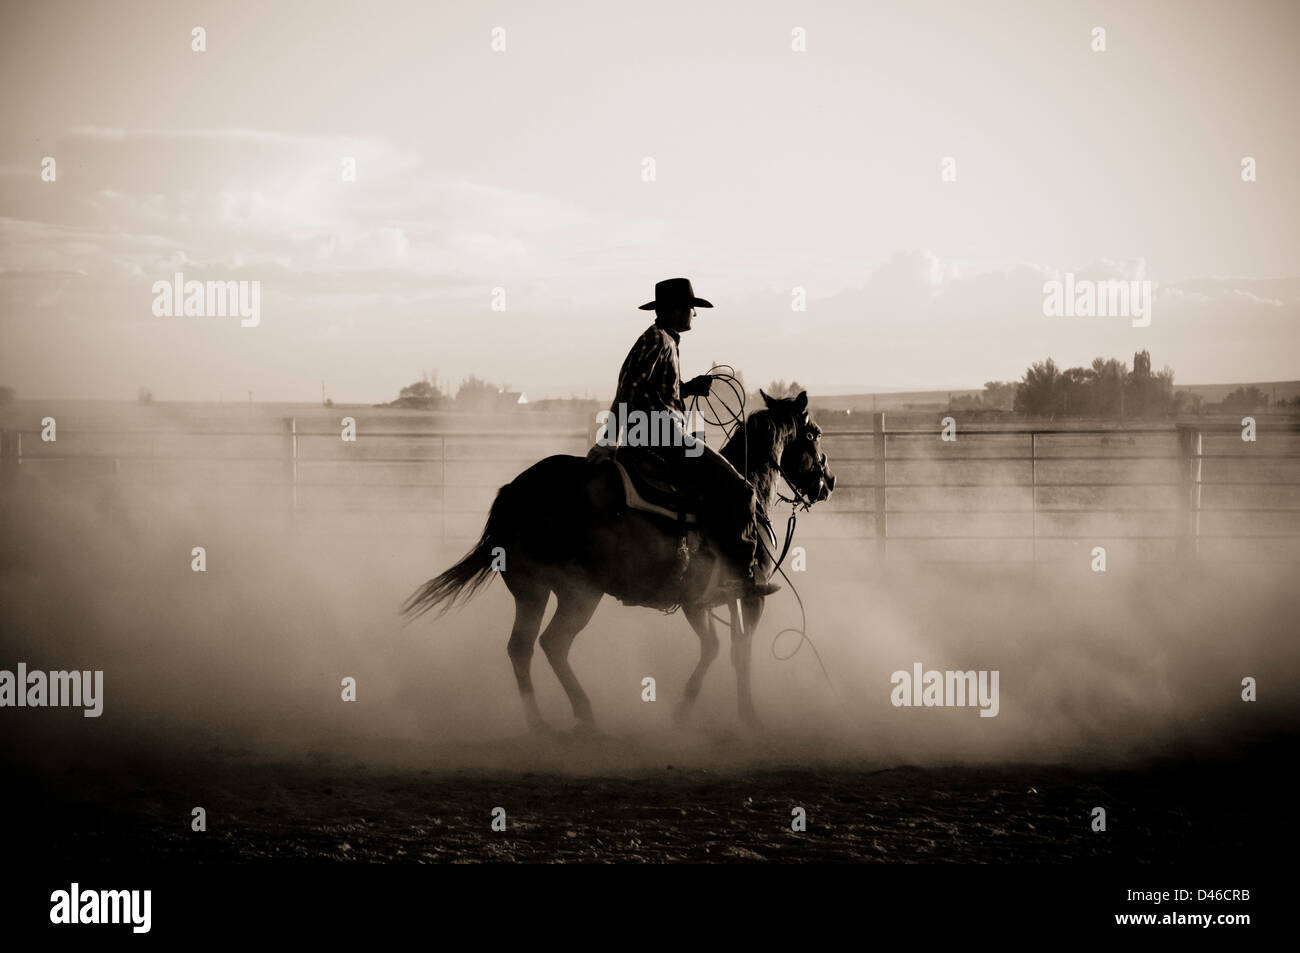 Cowboy auf Pferd in staubigen Arena. Schwarz und weiß. Twin Falls, Idaho. Stockfoto